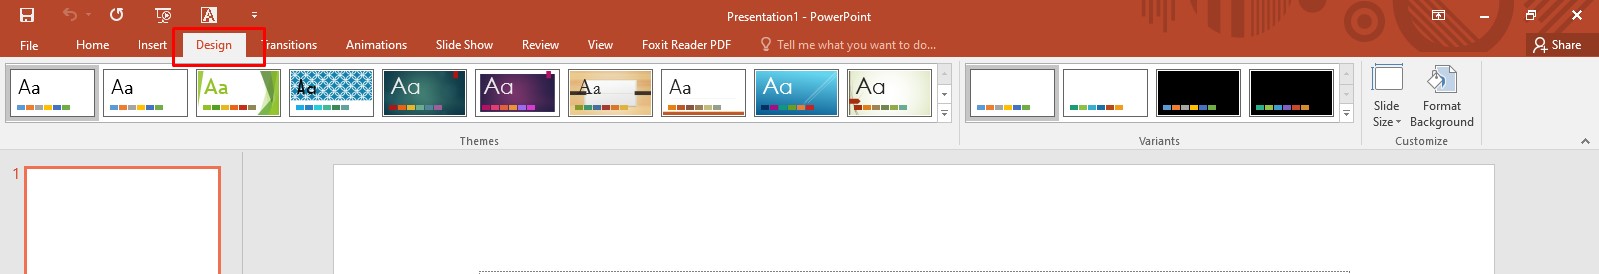 Hướng dẫn sử dụng PowerPoint từ A - Z: Thẻ Design